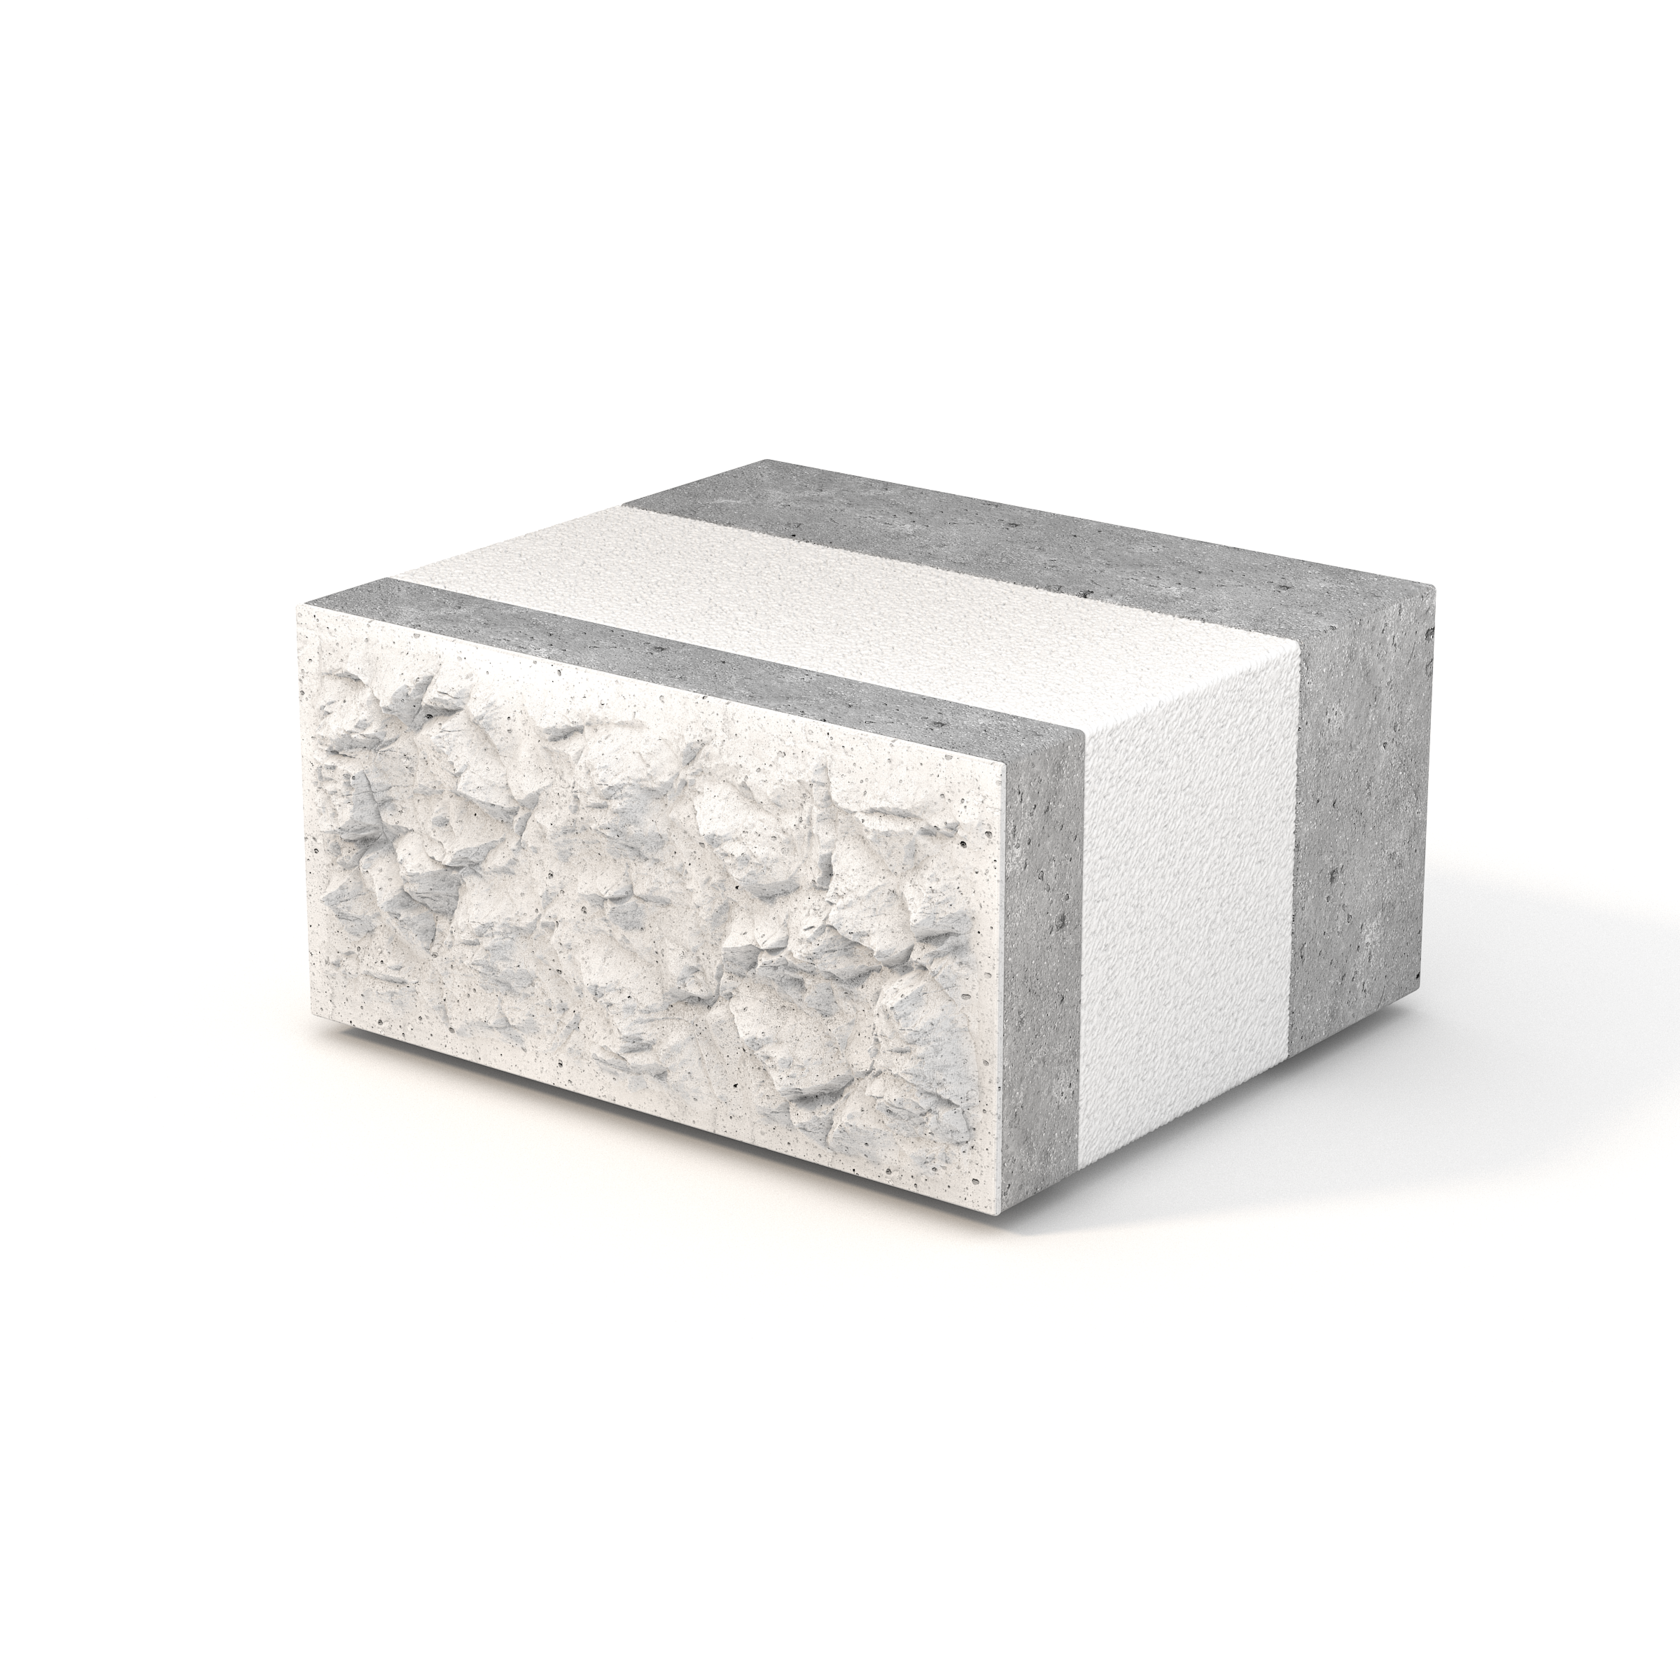 Многослойные стеновые строительные теплоэффективные блоки: производство, характеристики, применение и отзывы